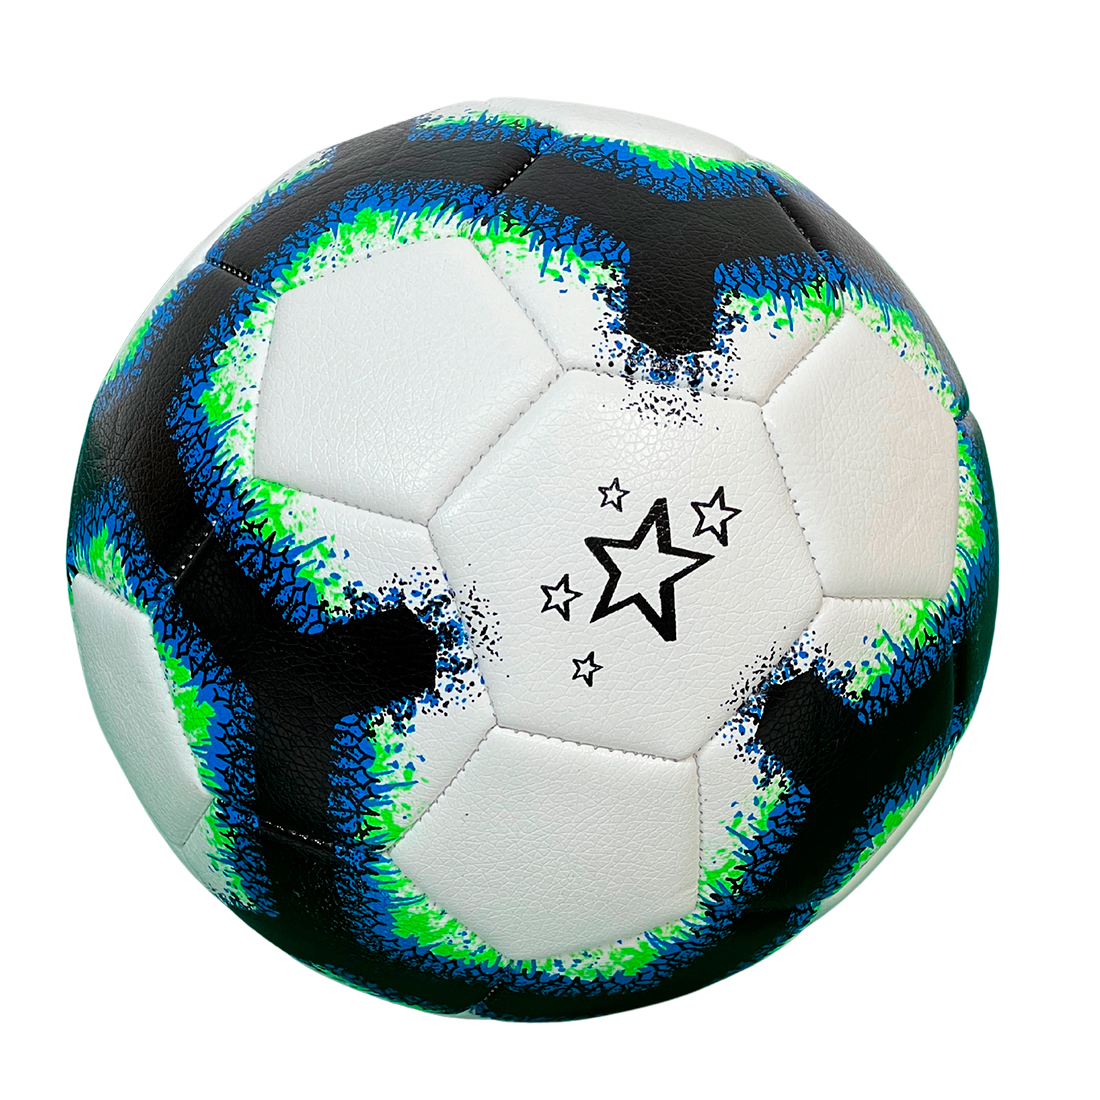 М'яч футбольний Europaw AFB 4 синій-чорний